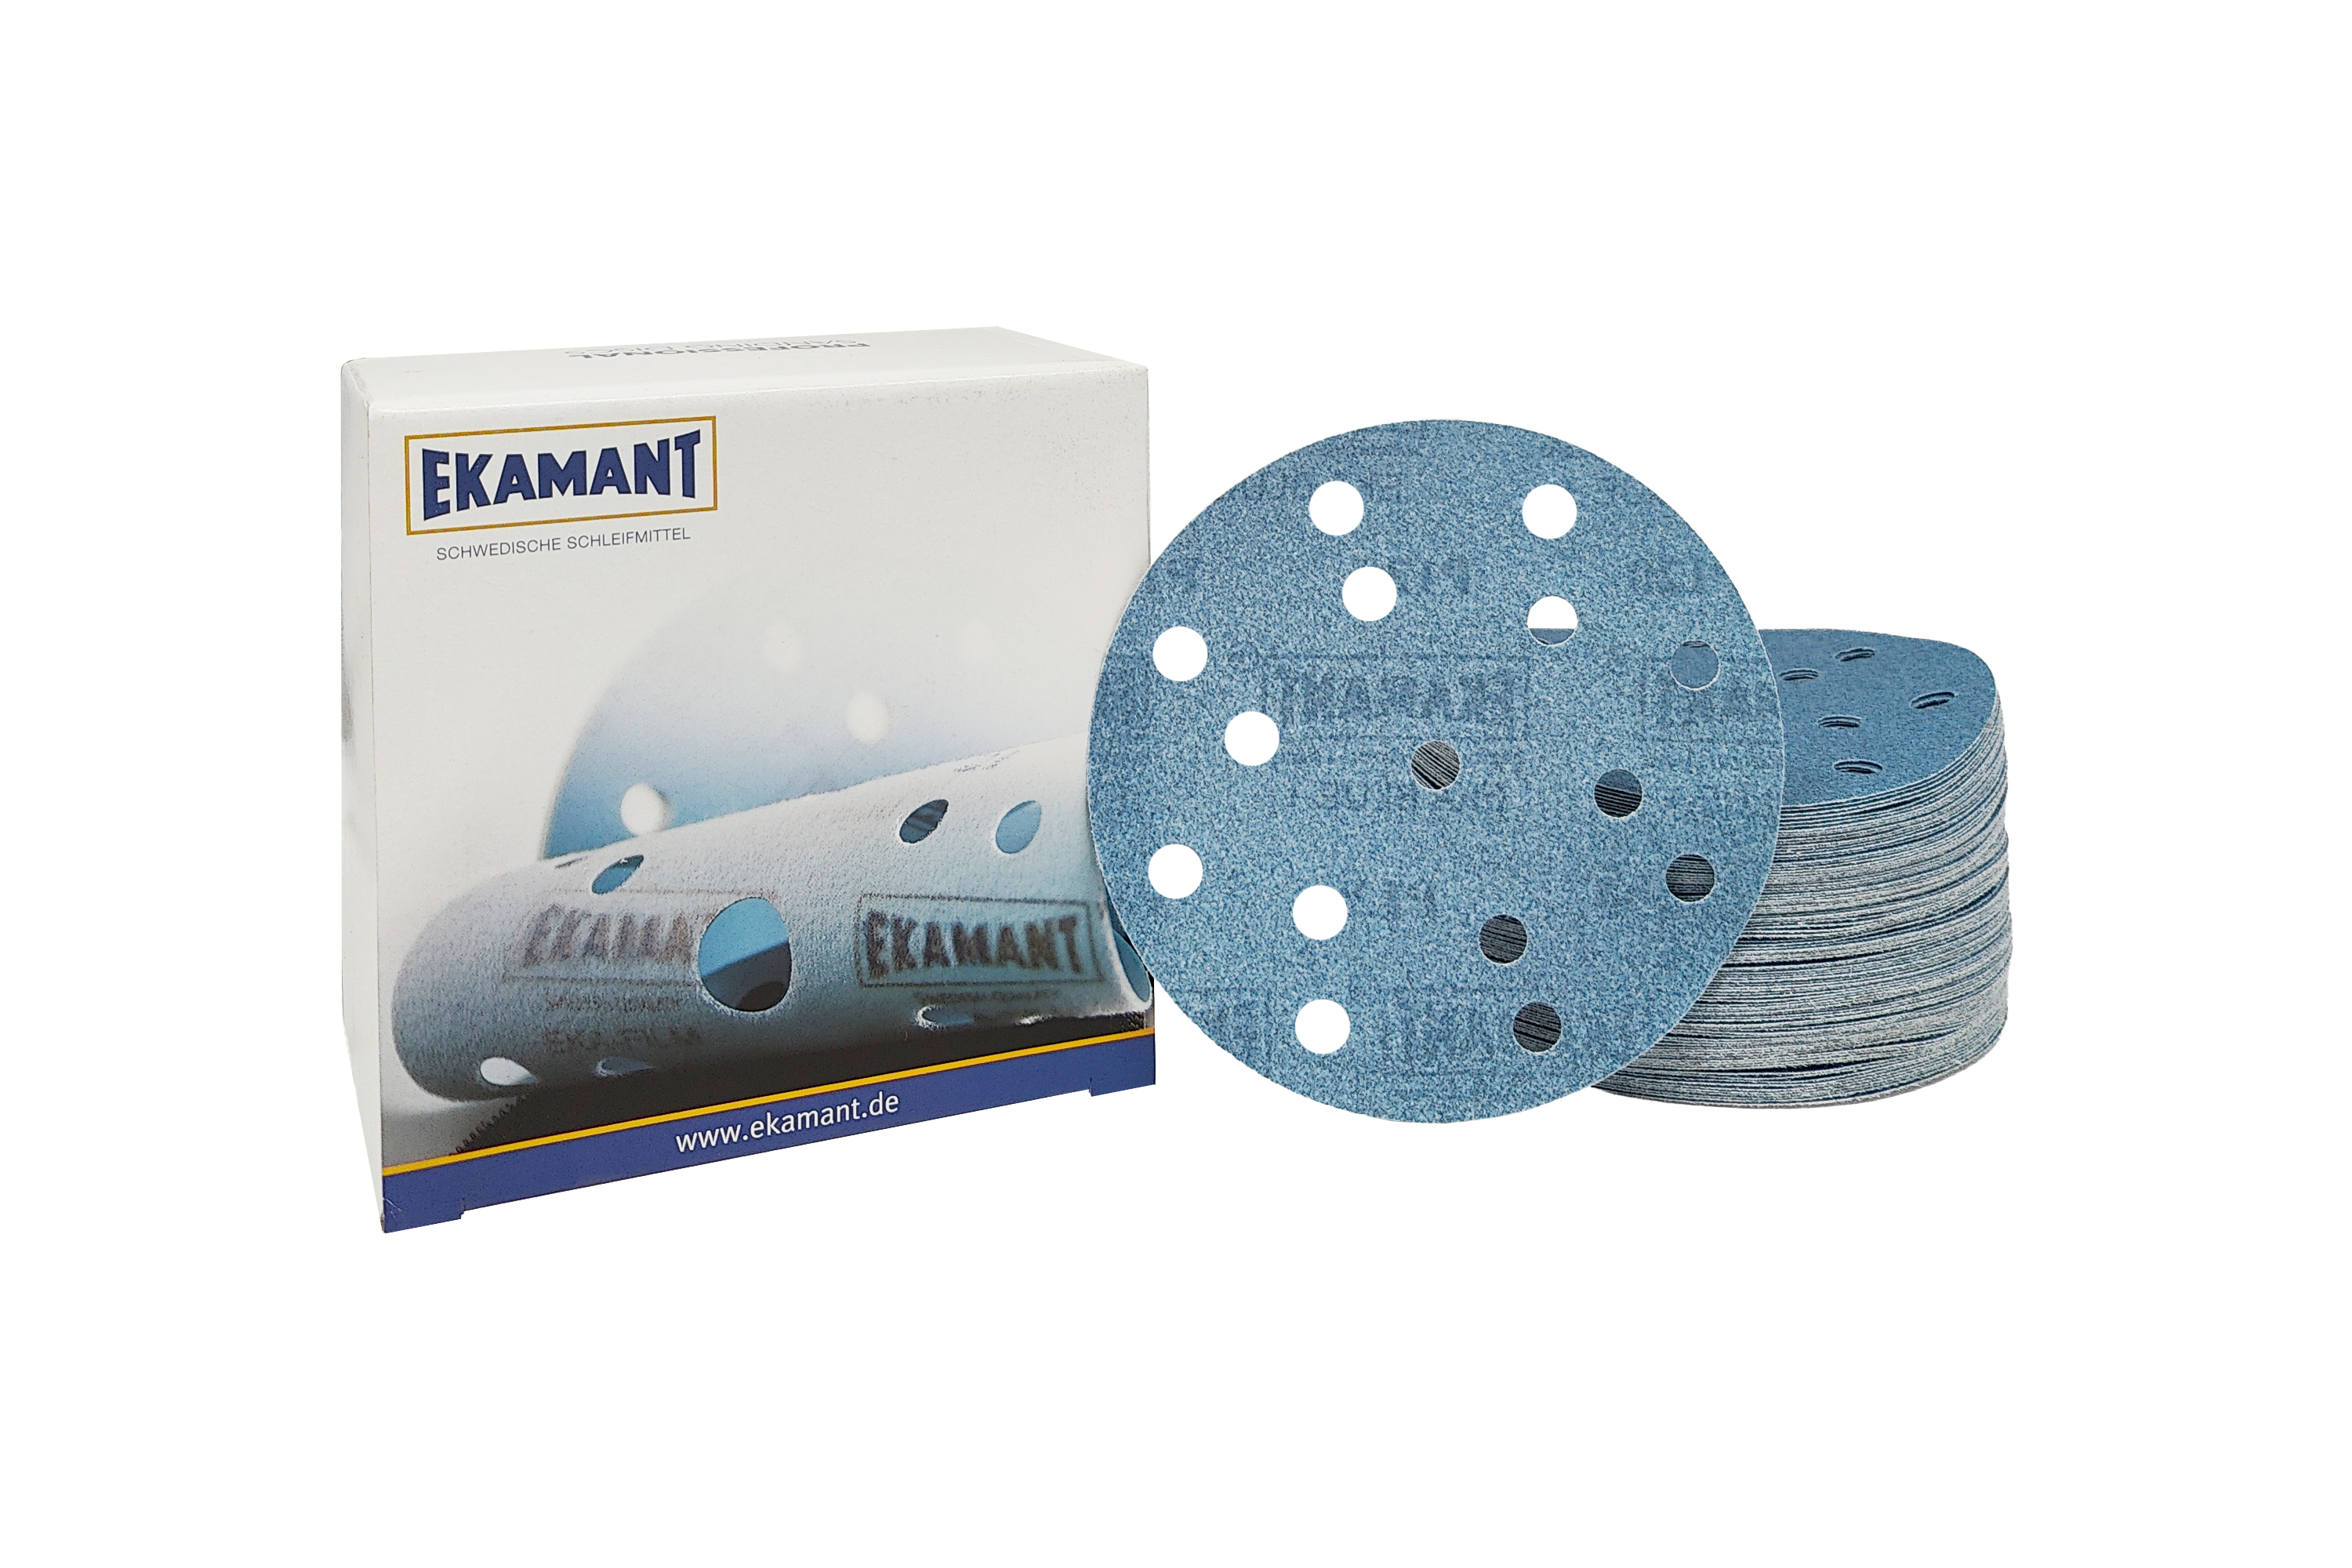 Abbildung Ekamant Eka Blue V 150mm 15L Verpackung und Scheiben als Stapel.